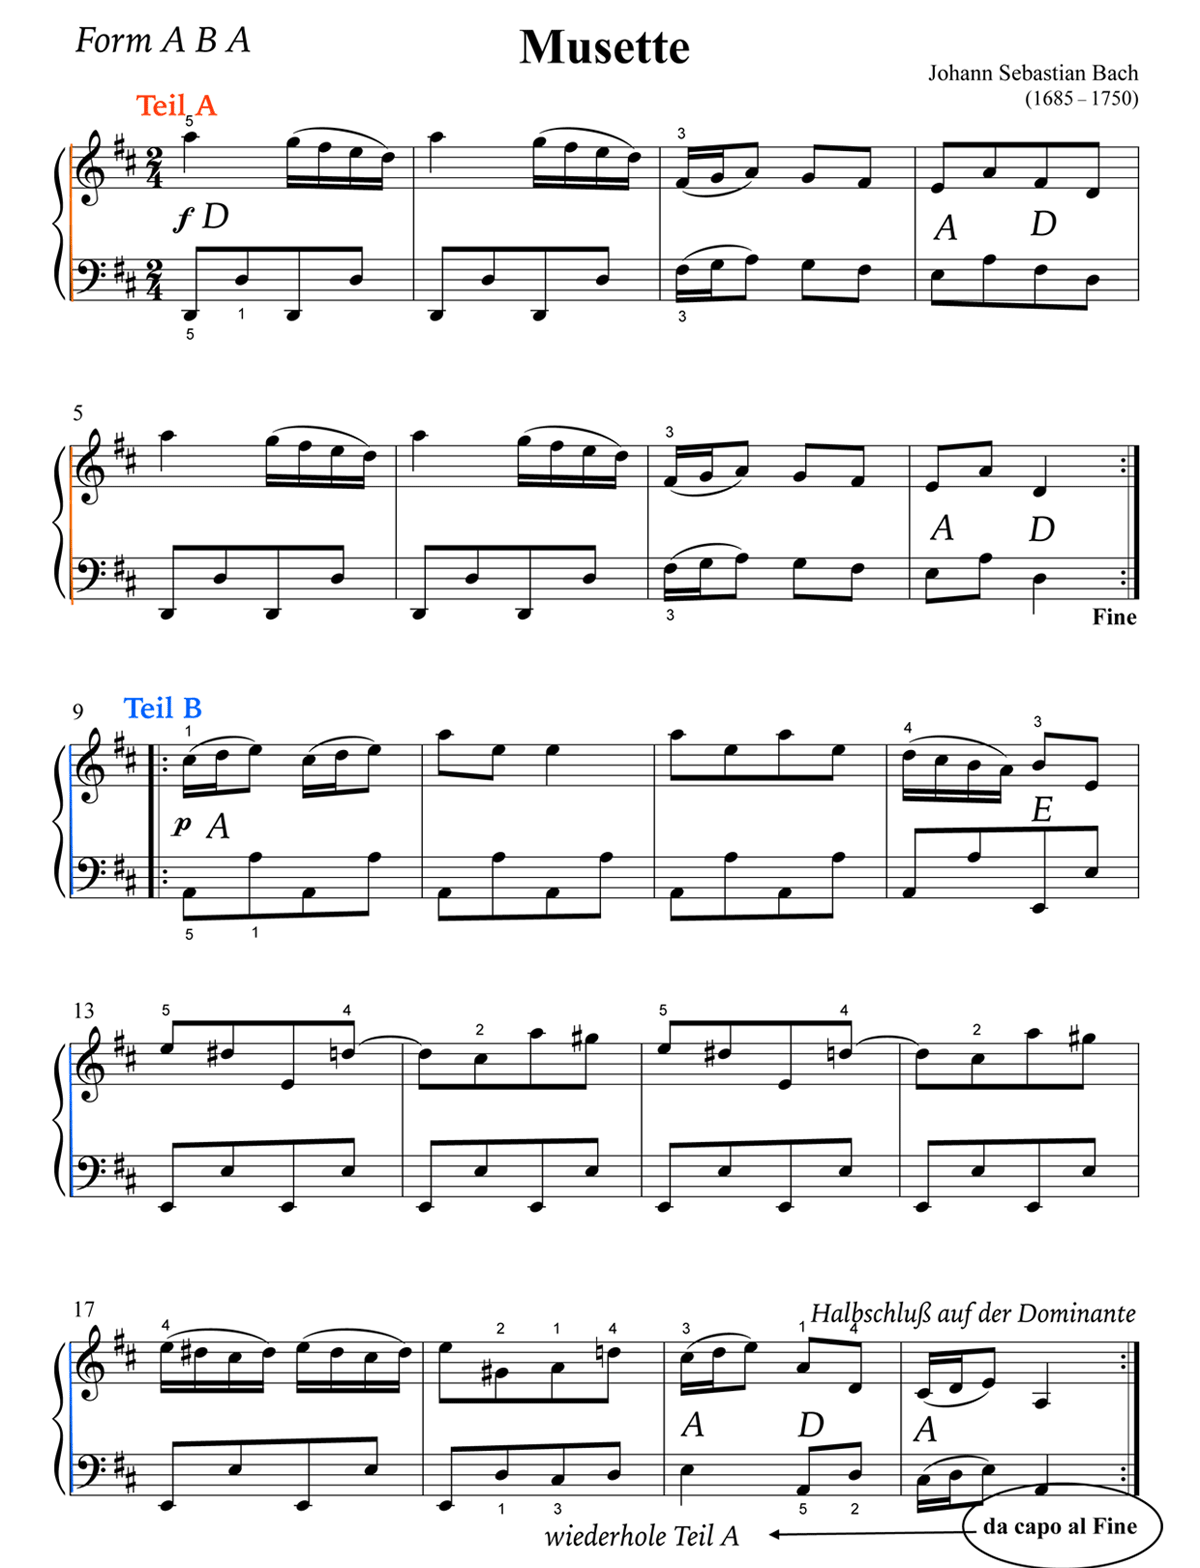 Form und Harmonie von J. S. Bach: Musette